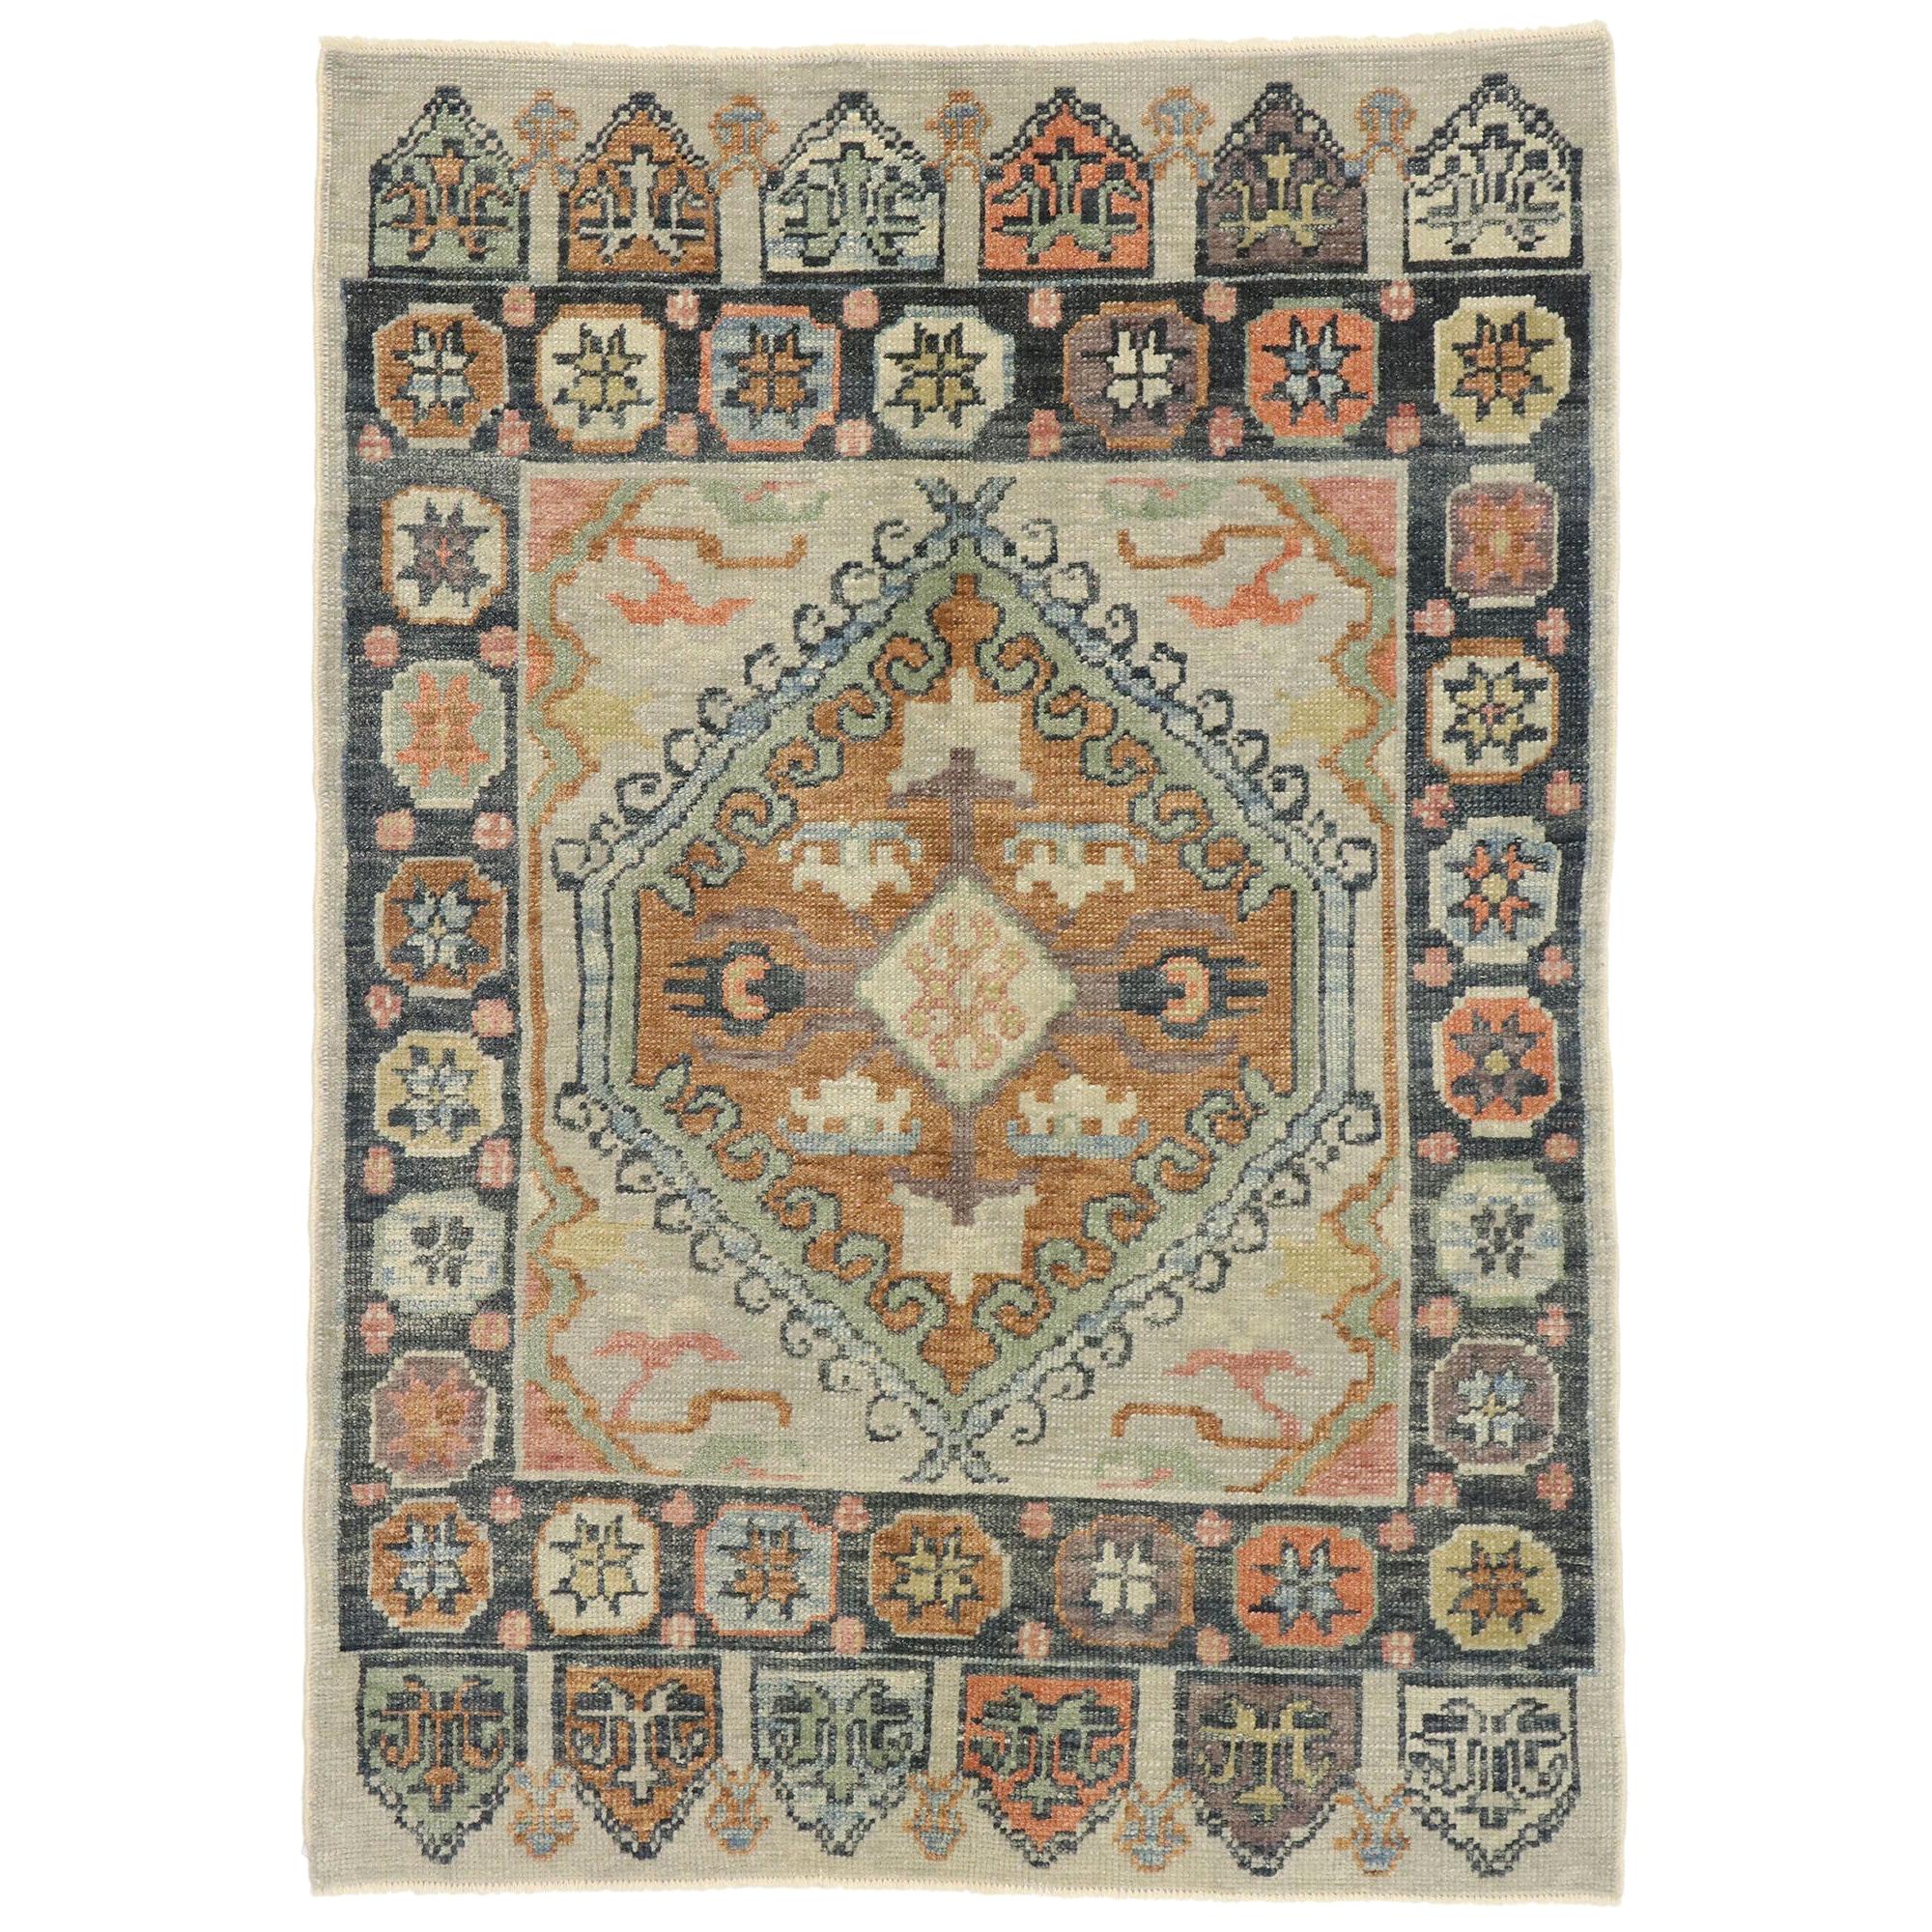 Zeitgenössischer türkischer Oushak-Teppich mit modernem, amerikanischem Handwerksstil